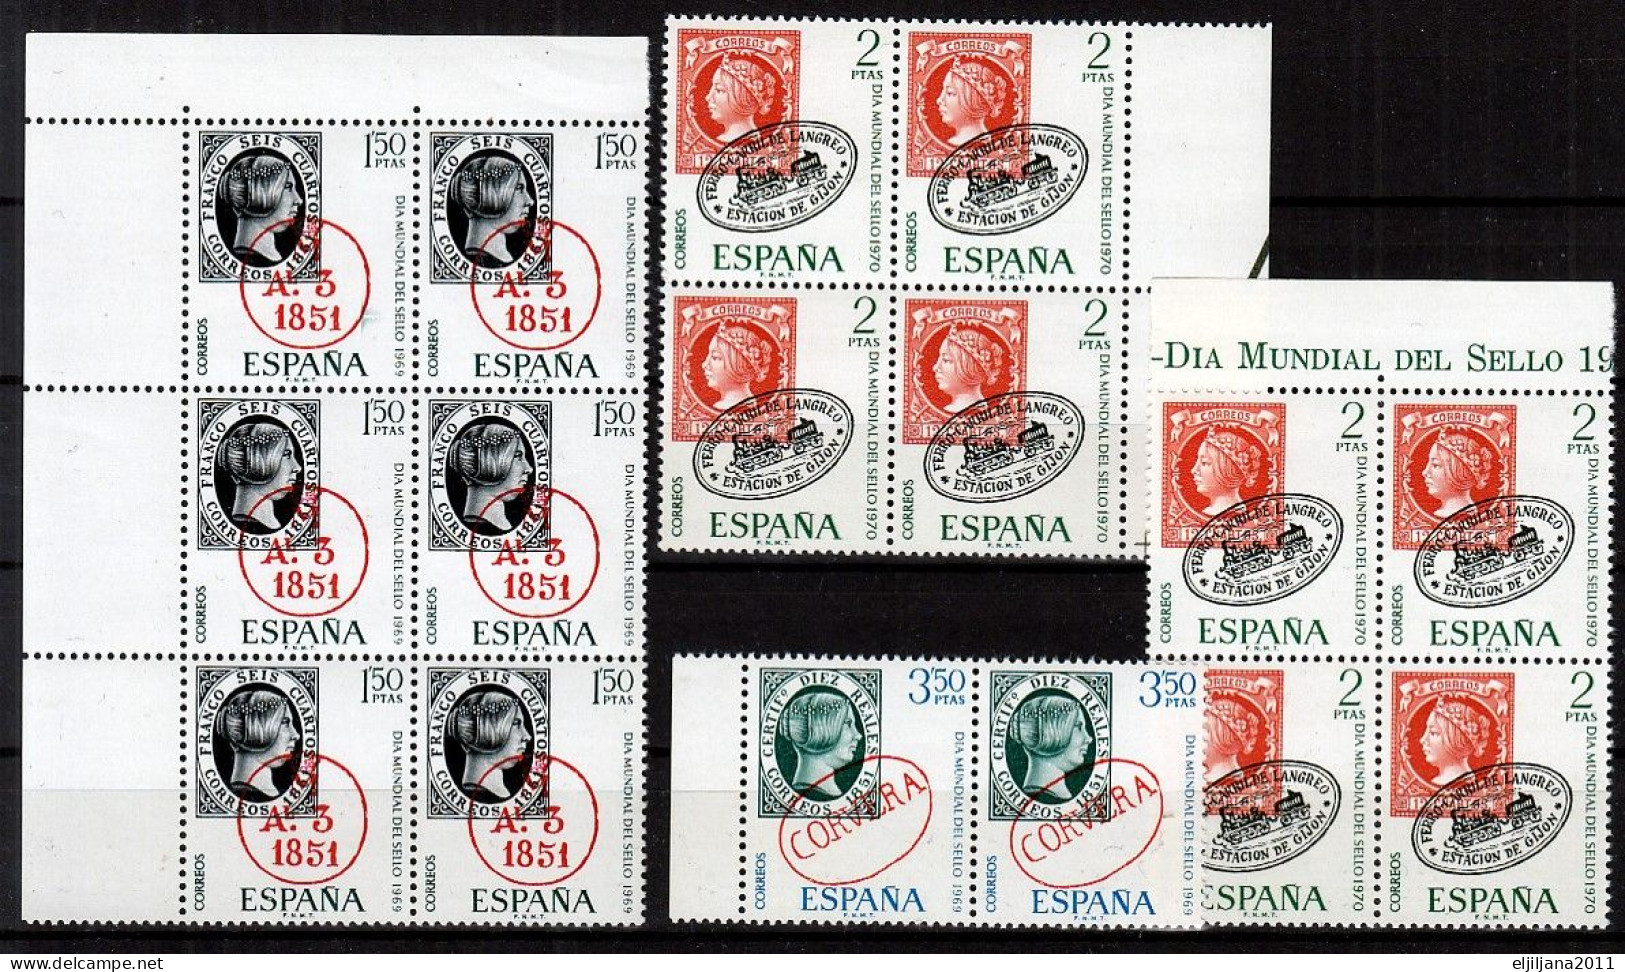 ⁕ SPAIN / ESPANA 1969 - 1970 ⁕ World Stamp Day Mi.1809/10 & Mi.1861 ⁕ 16v MNH - Unused Stamps